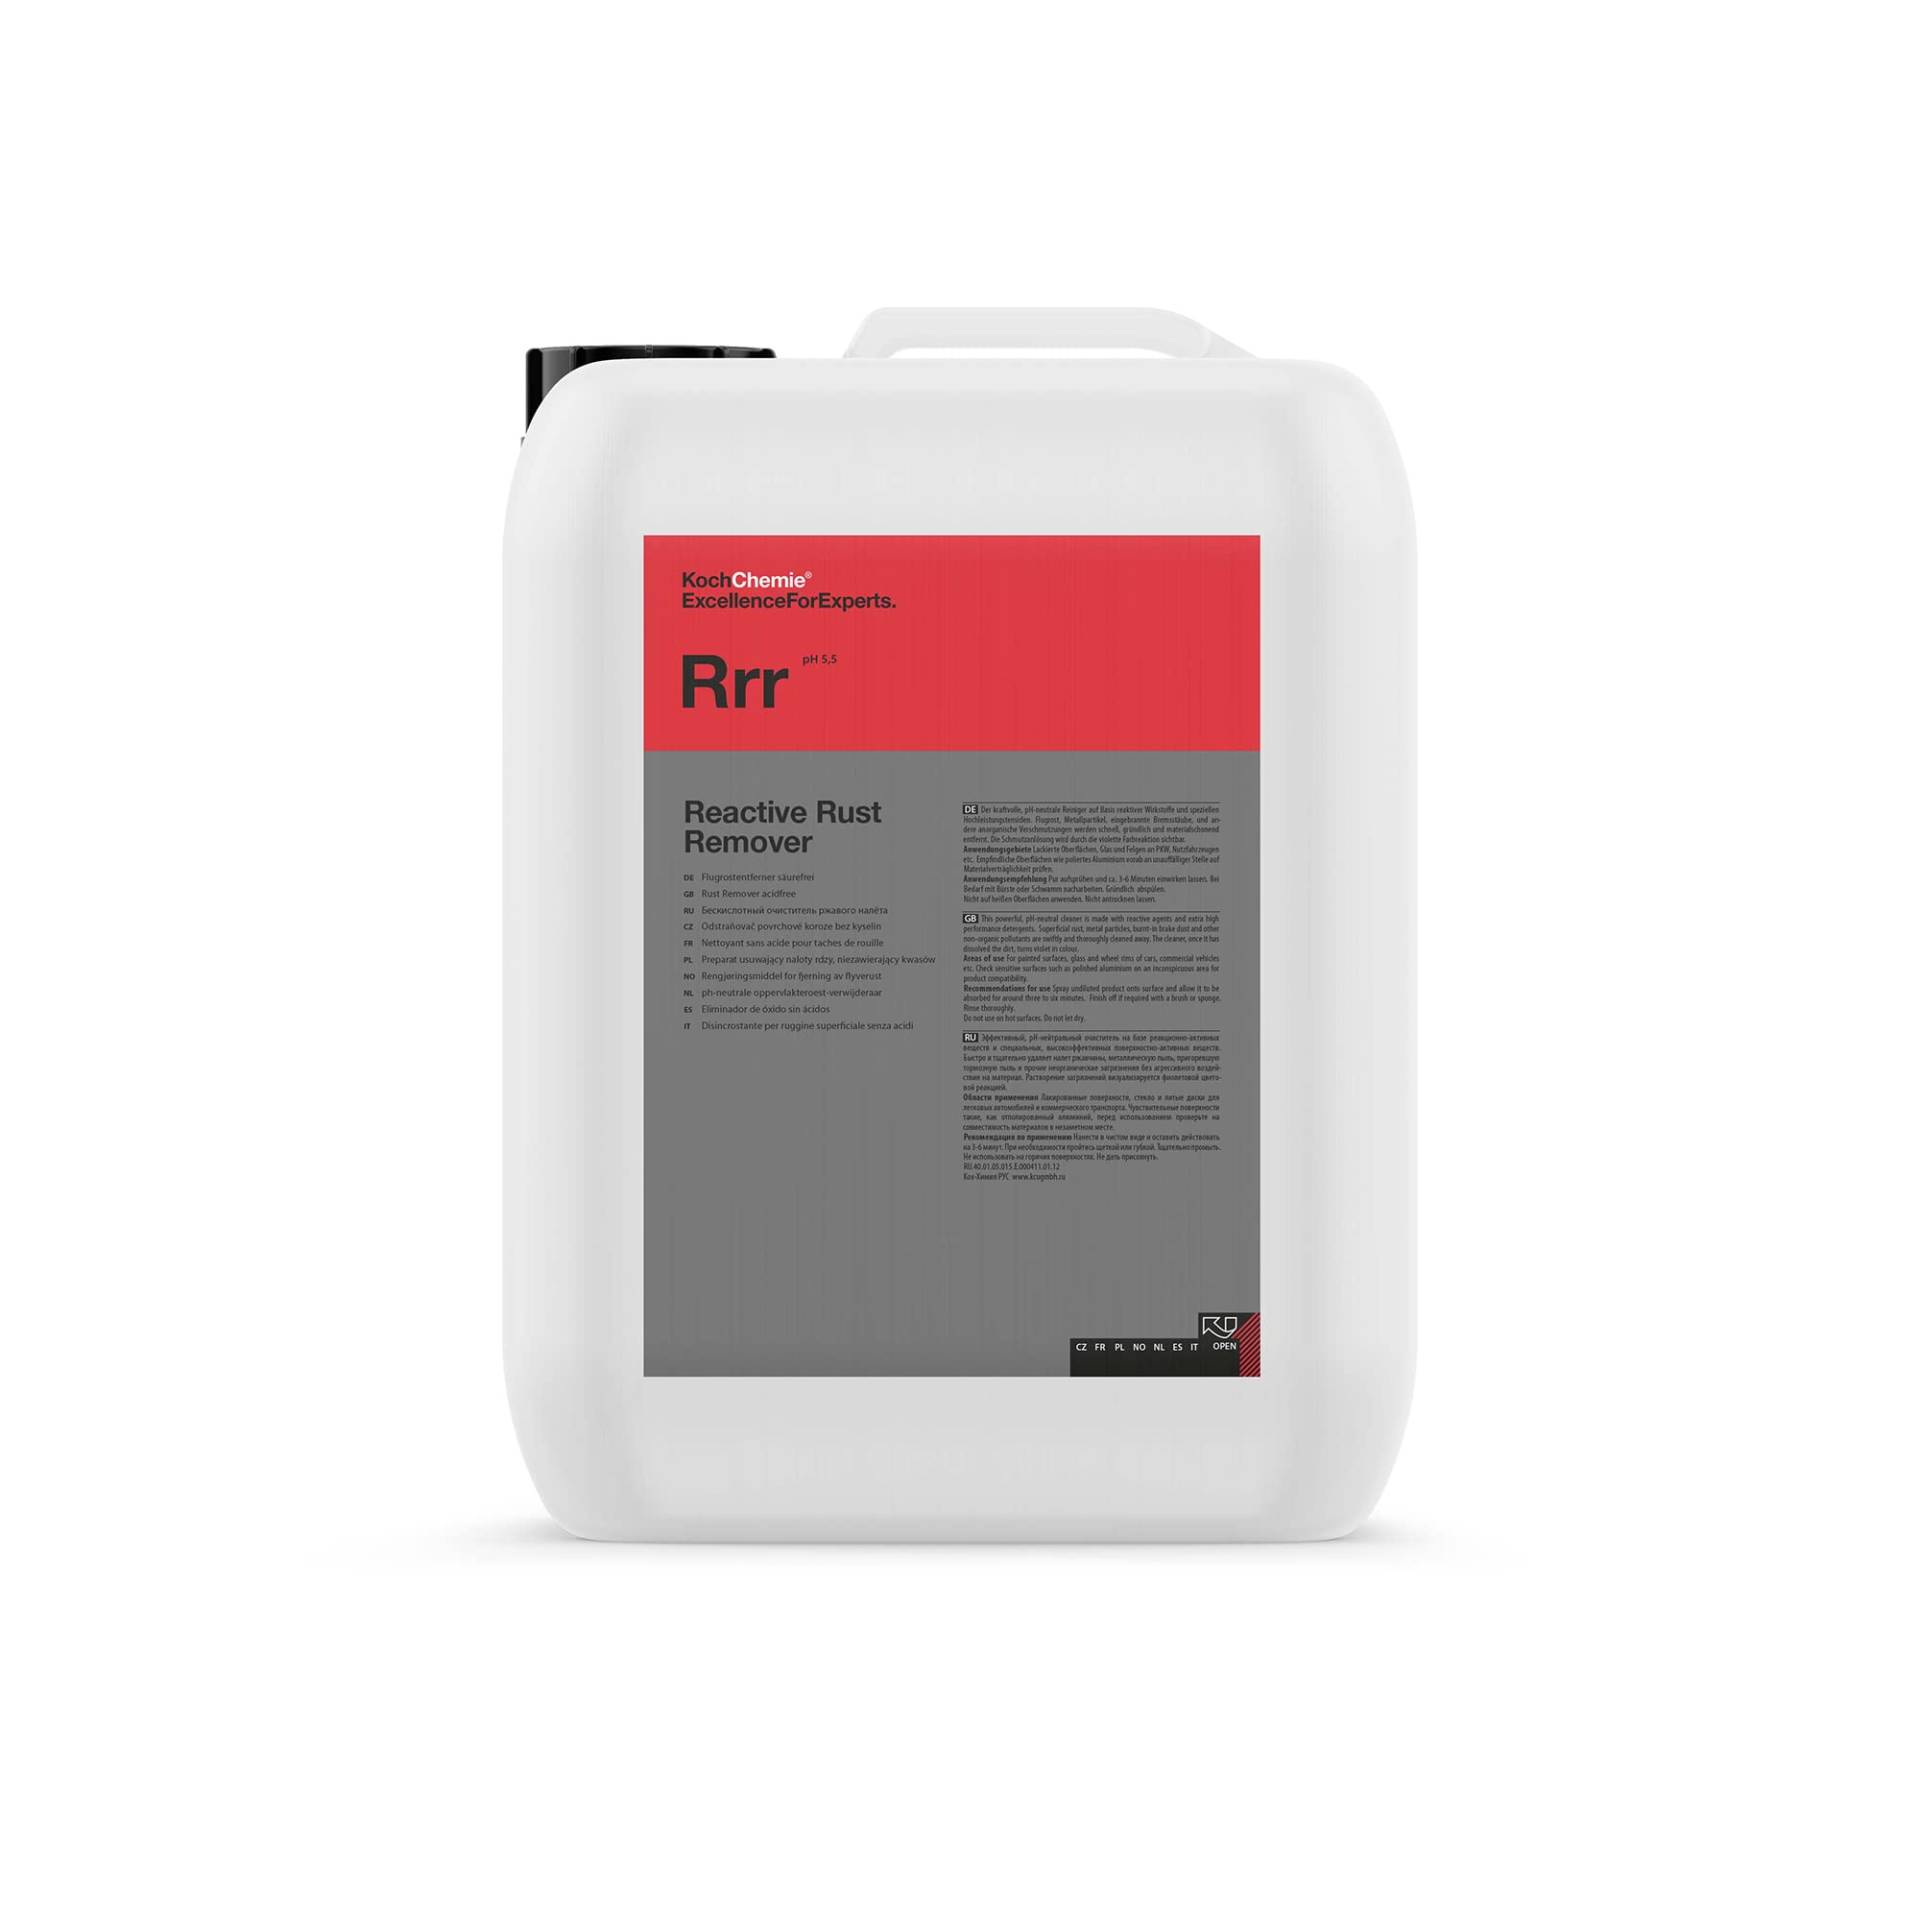 Rrr Koch Chemie Reactive Rust Remover Flugrostentferner 11 kg von Koch Chemie